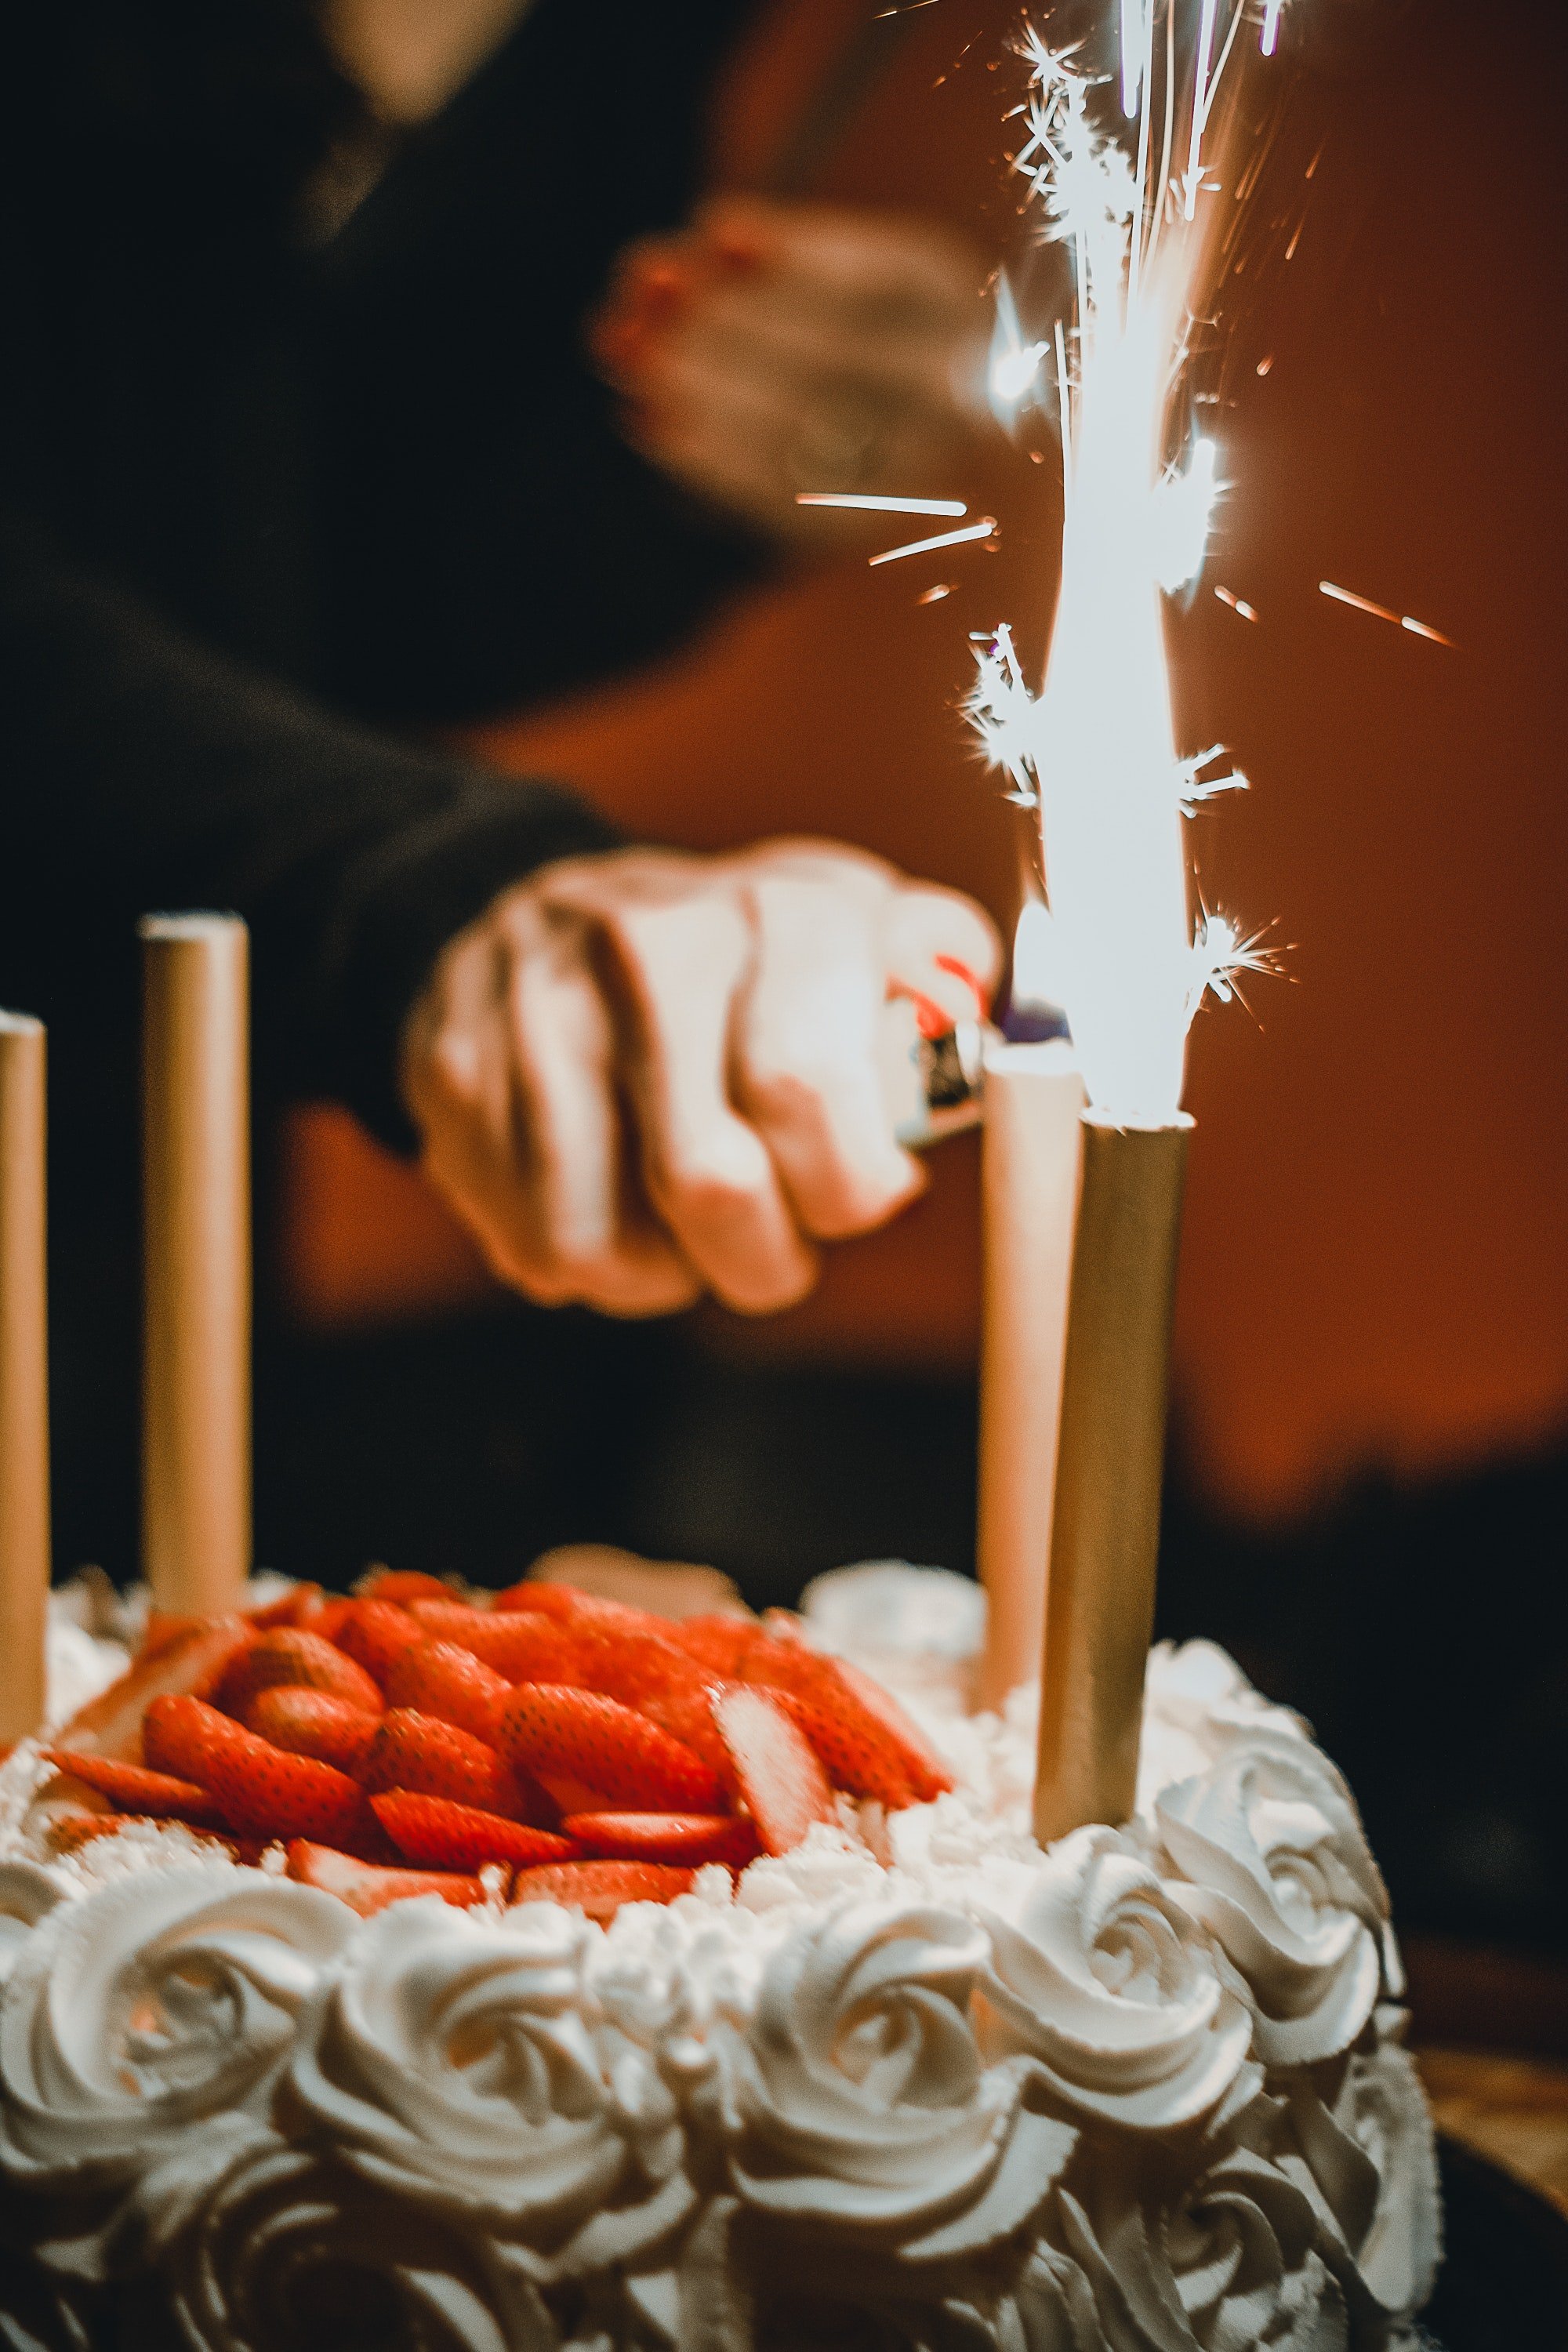 Una persona encendiendo las velas de un pastel de cumpleaños. | Foto: Pexels